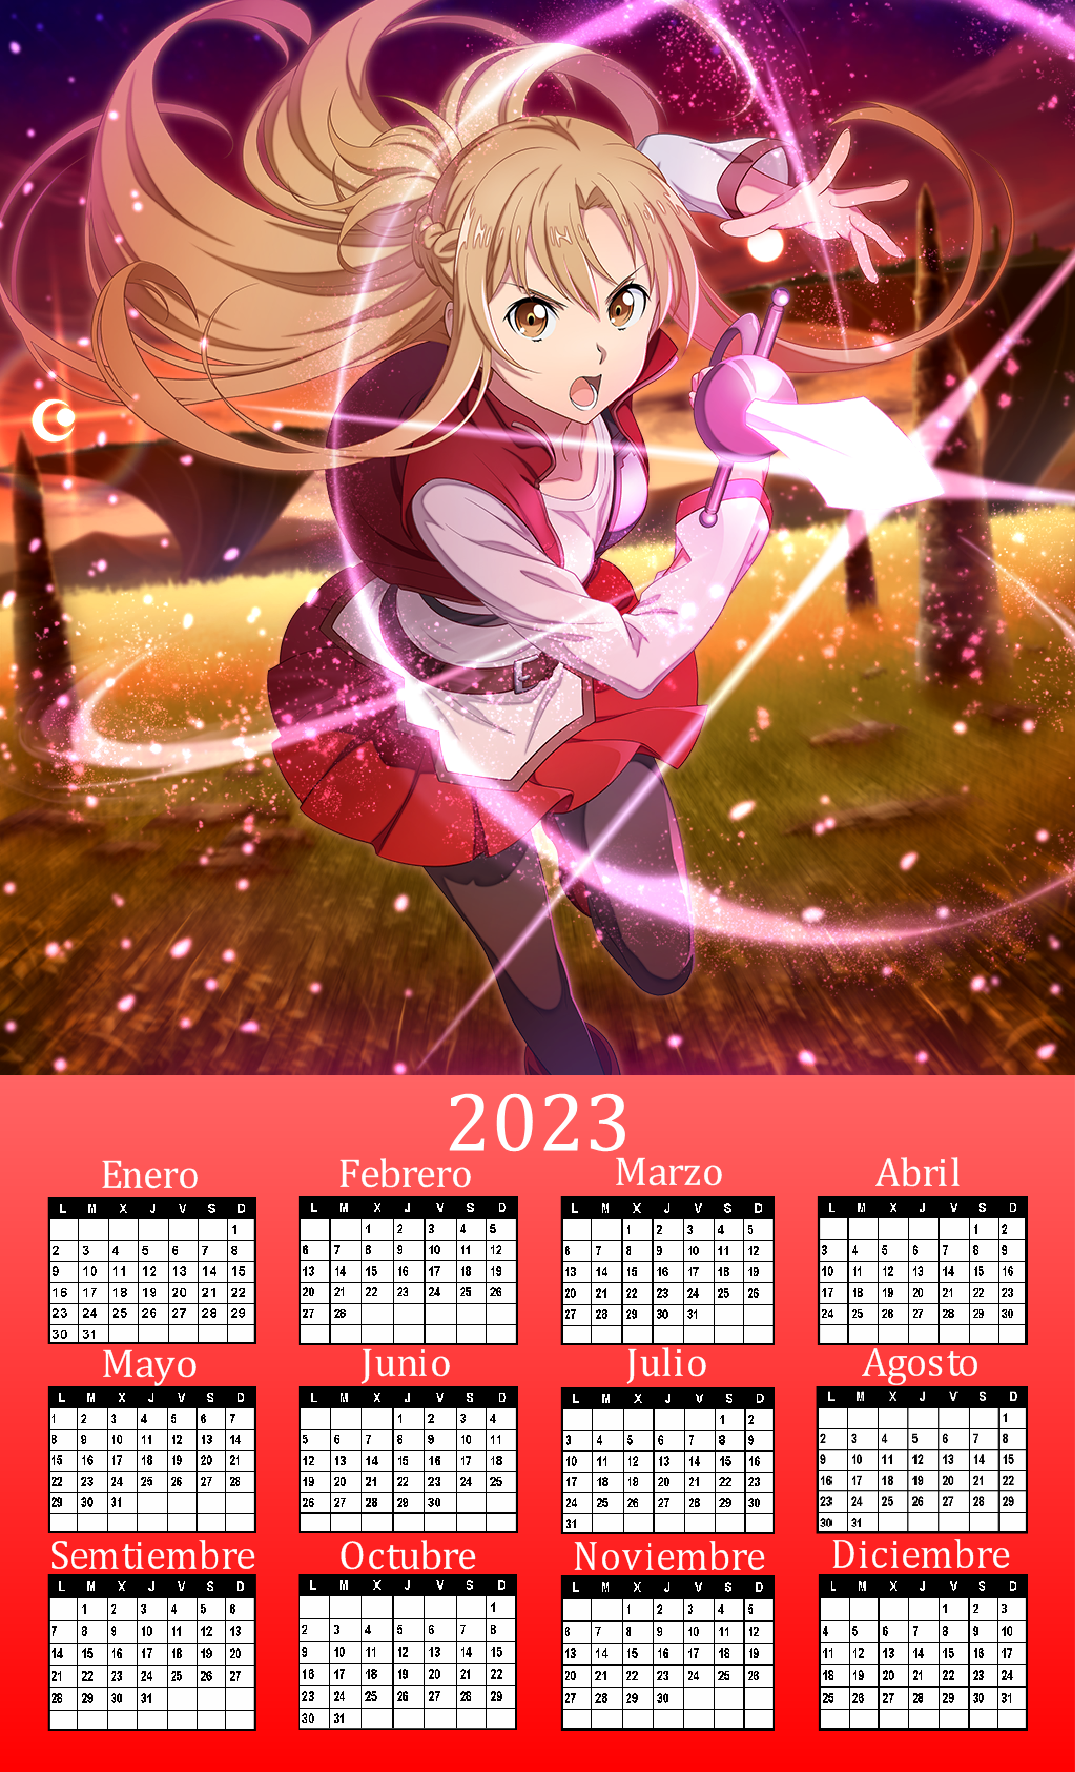 Calendario tipo Anime de Ao nuevo 5 by DeckardReznov on DeviantArt